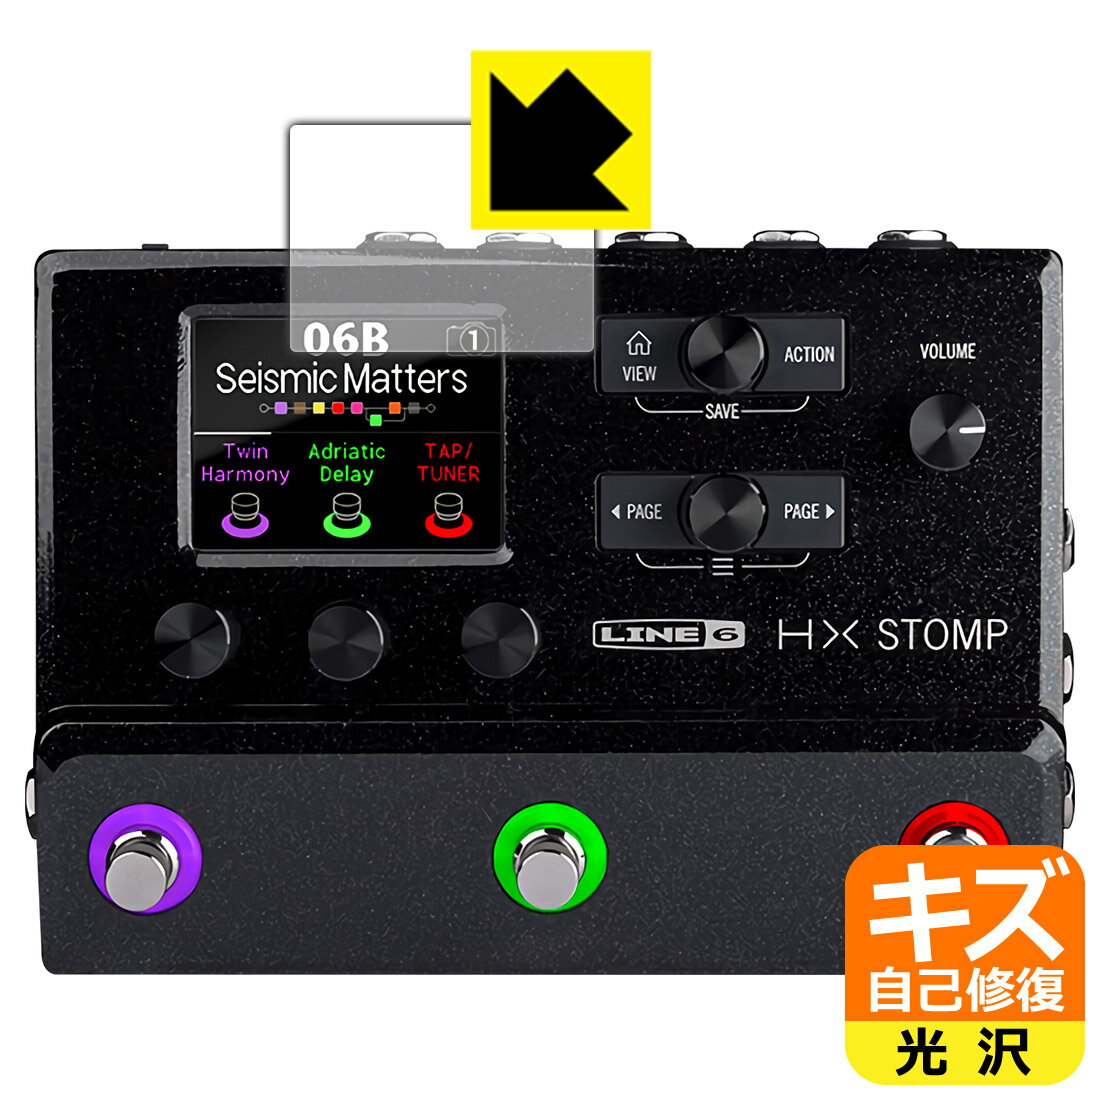 キズ自己修復保護フィルム Line 6 HX Stomp / HX Stomp XL (メイン画面用) 日本製 自社製造直販